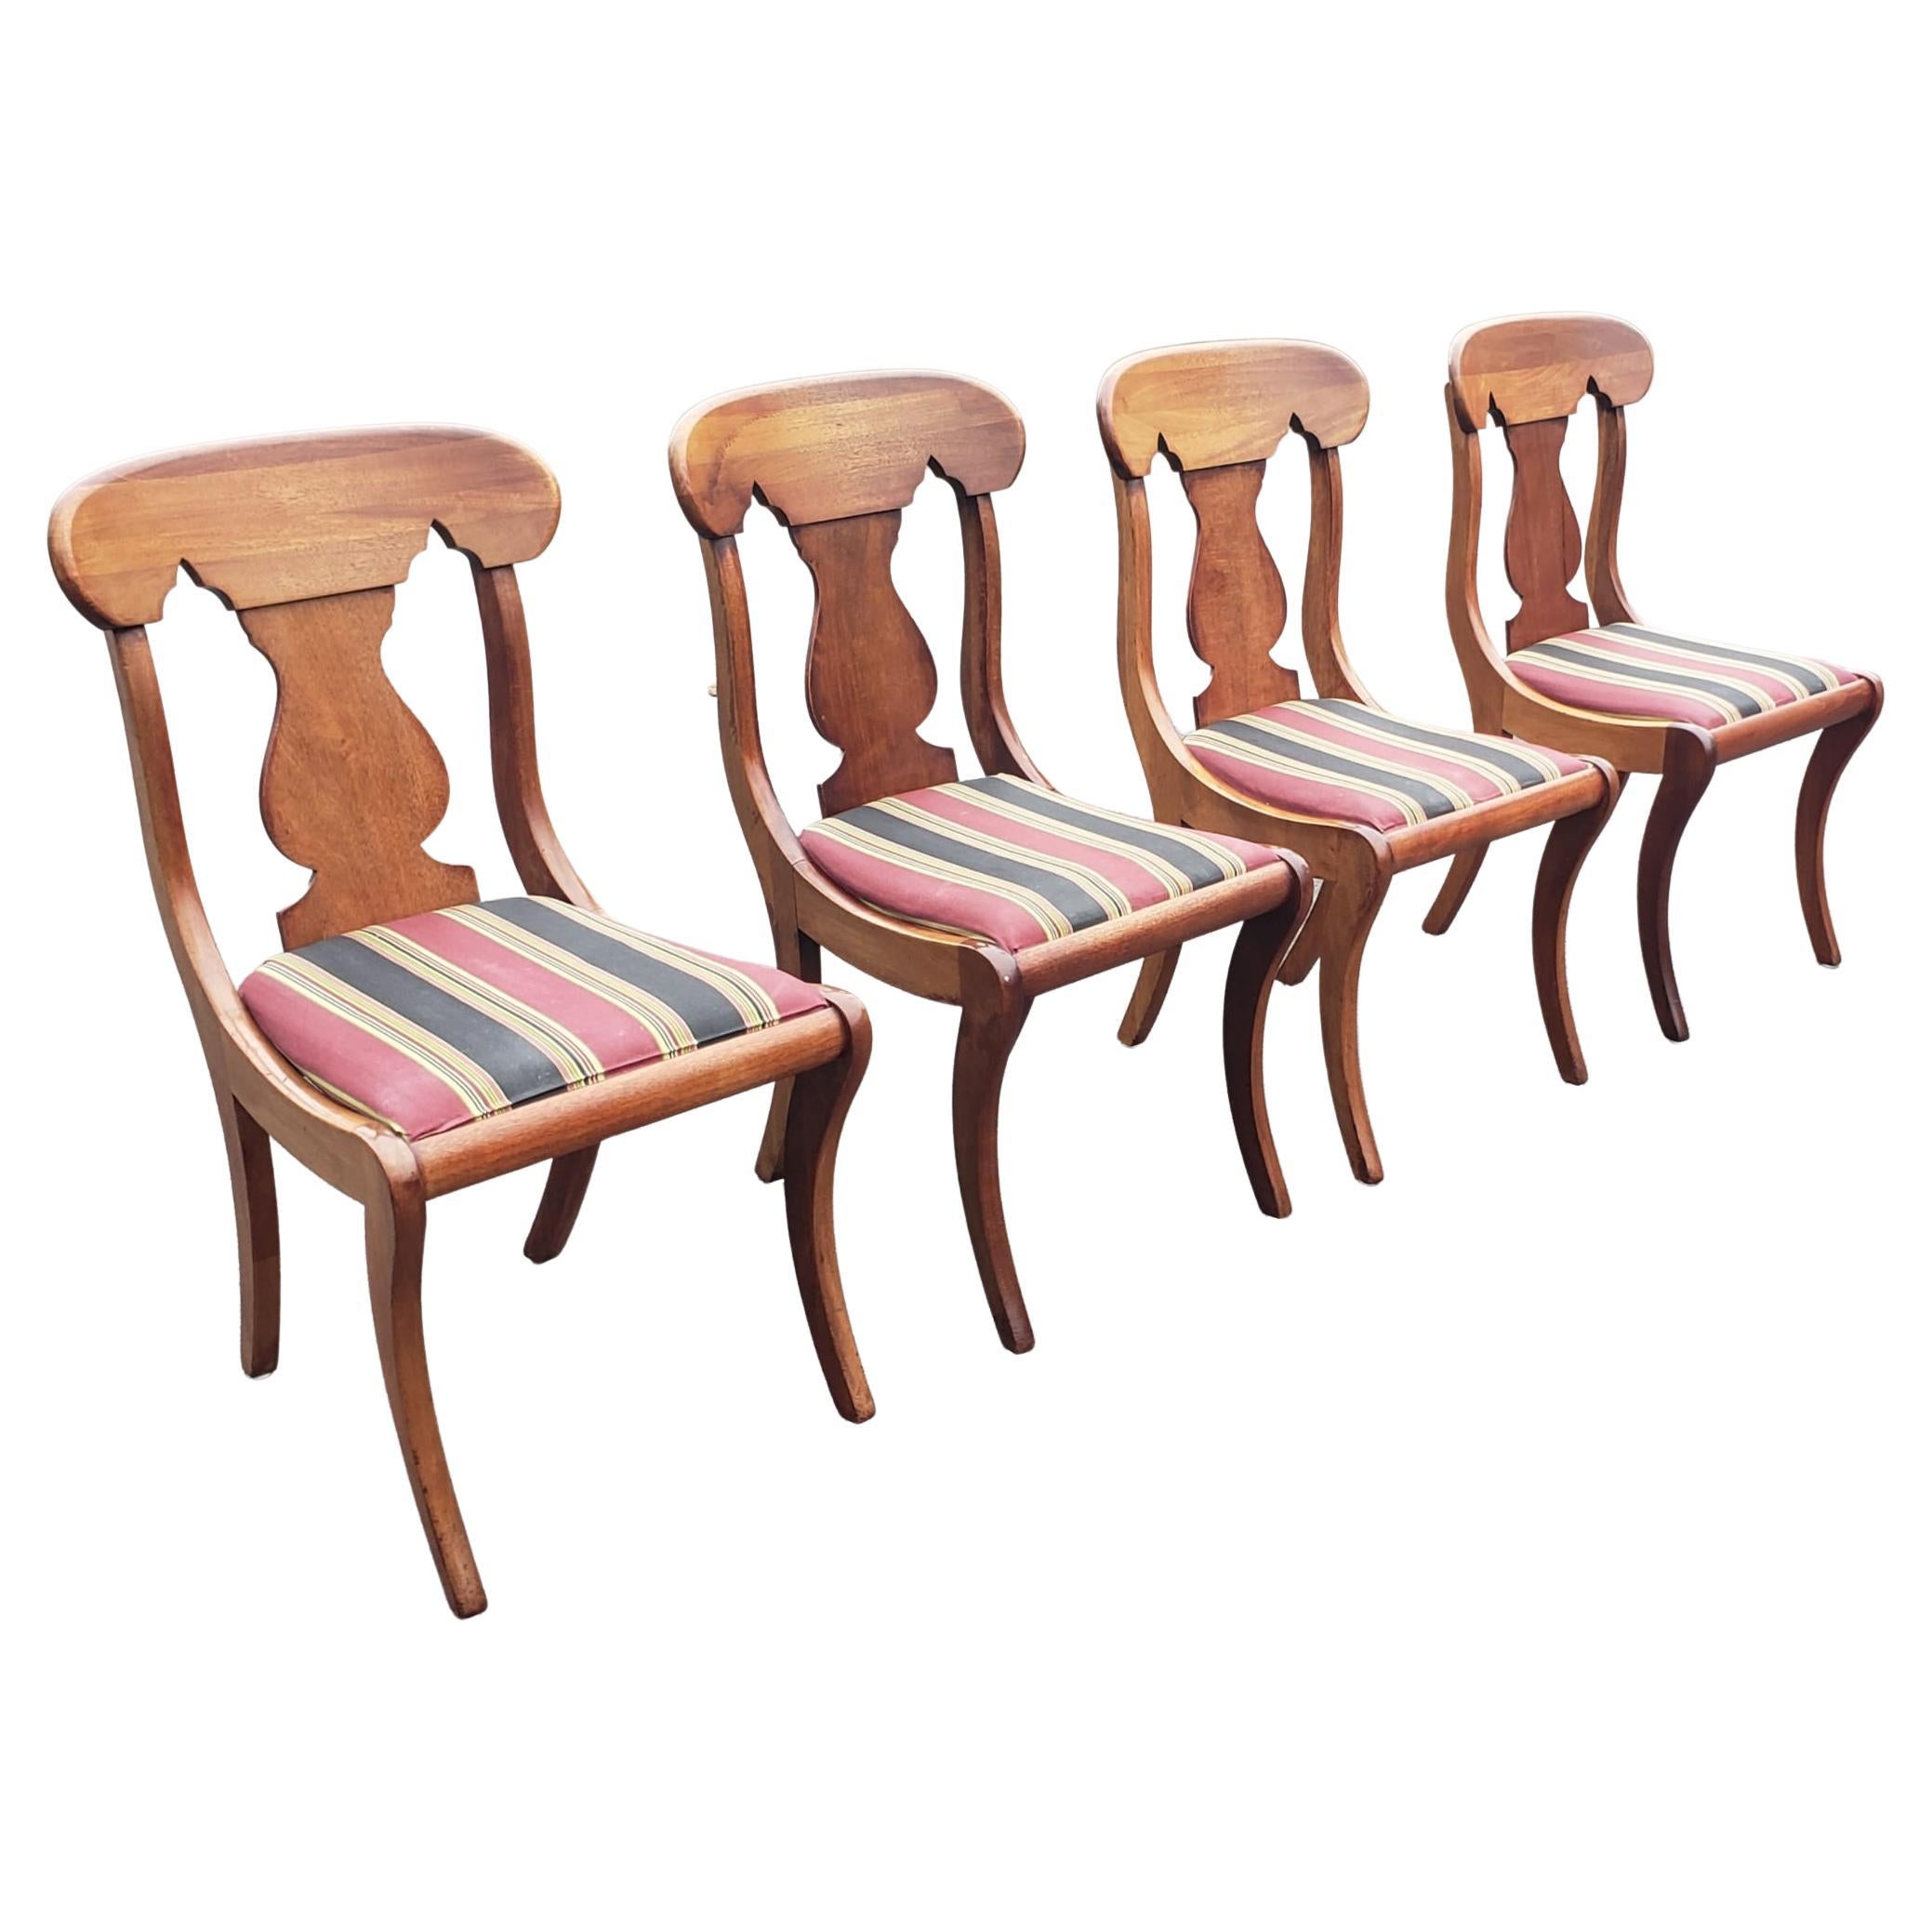 1930er Jahre Hickory Chair Company Empire Klismos Stil Mahagoni und gepolsterten Sitz Beistellstühle. Messen Sie 18